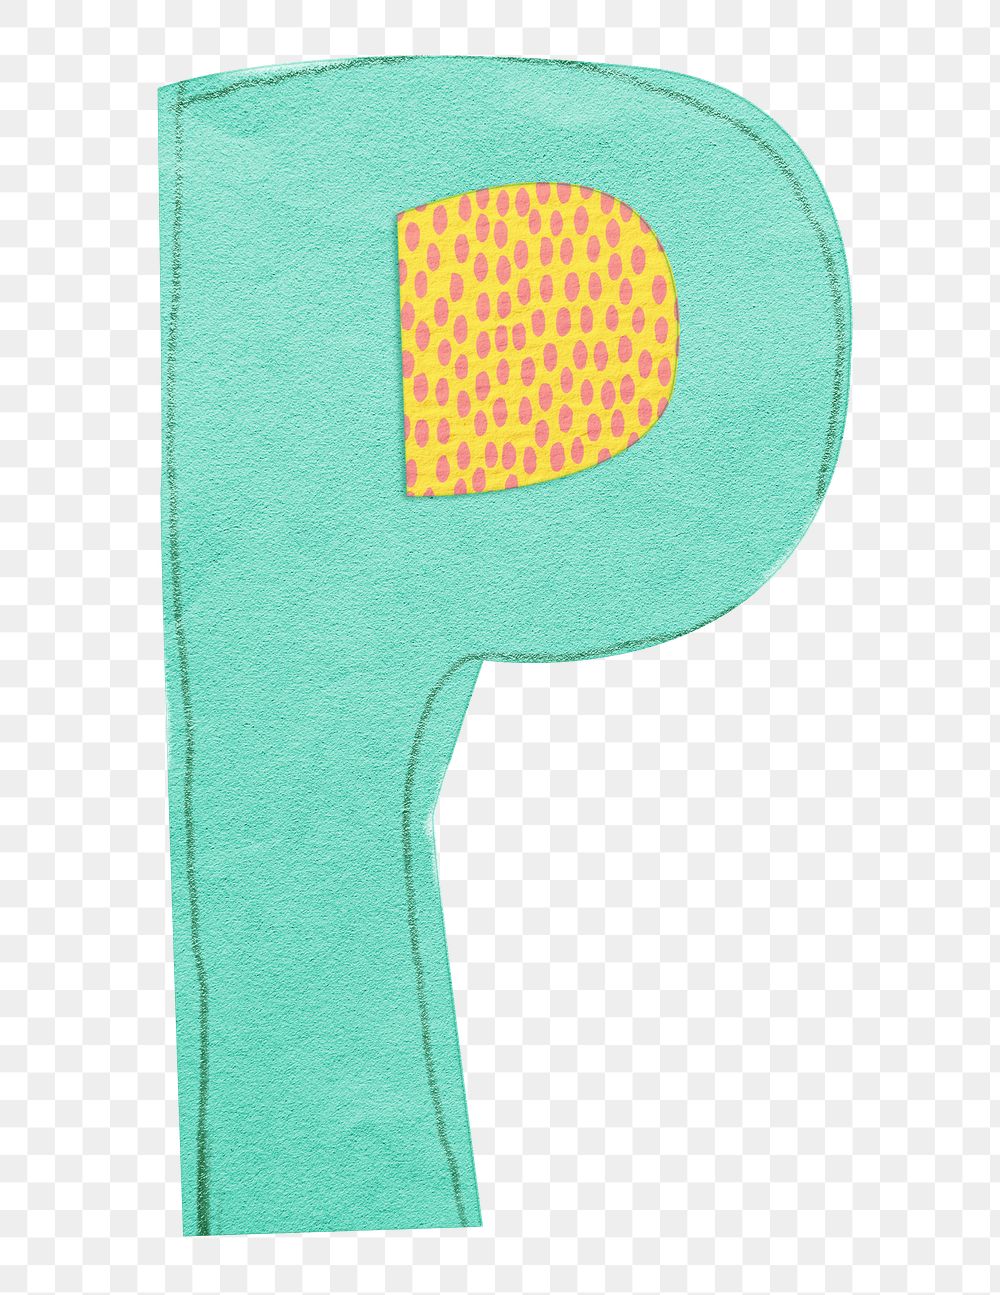 Letter P png cute paper cut alphabet, transparent background